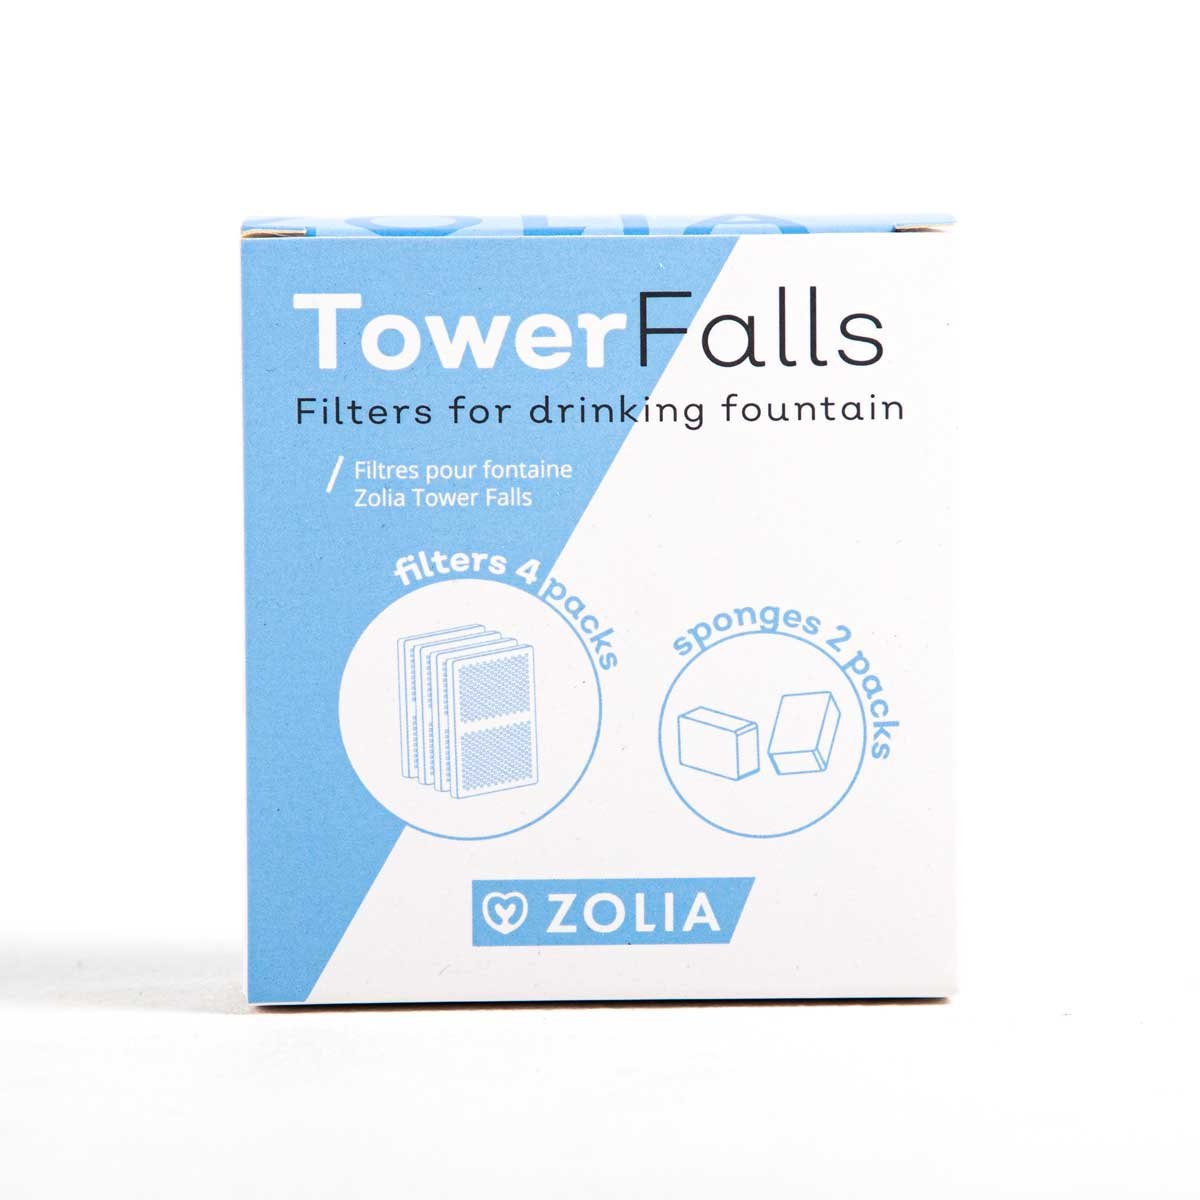 Filter für Trinkbrunnen Zolia Tower Falls - 4 Aktivkohlefilter + 2 Schaumfilter